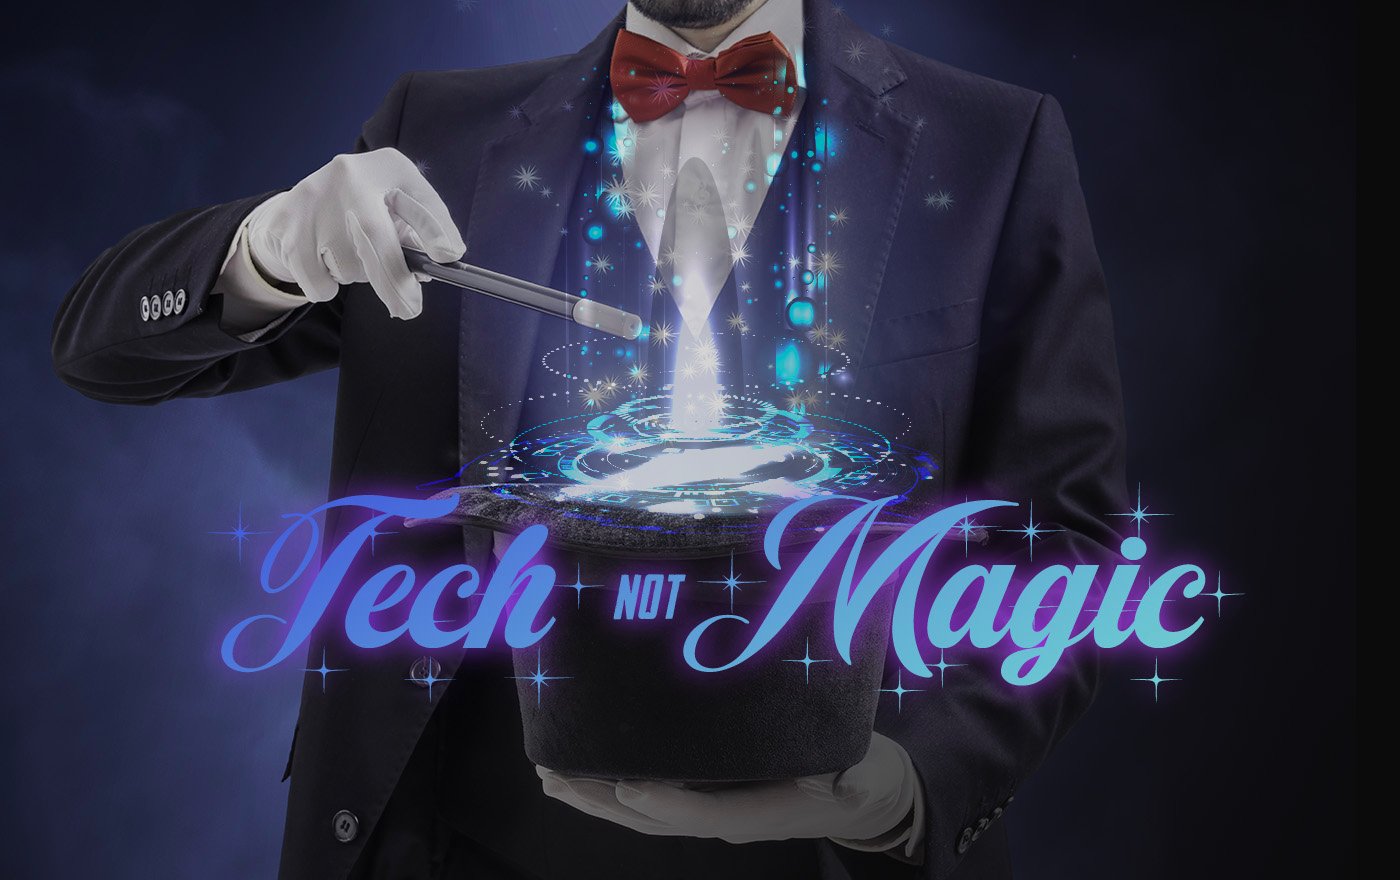 CFM Tech not magic